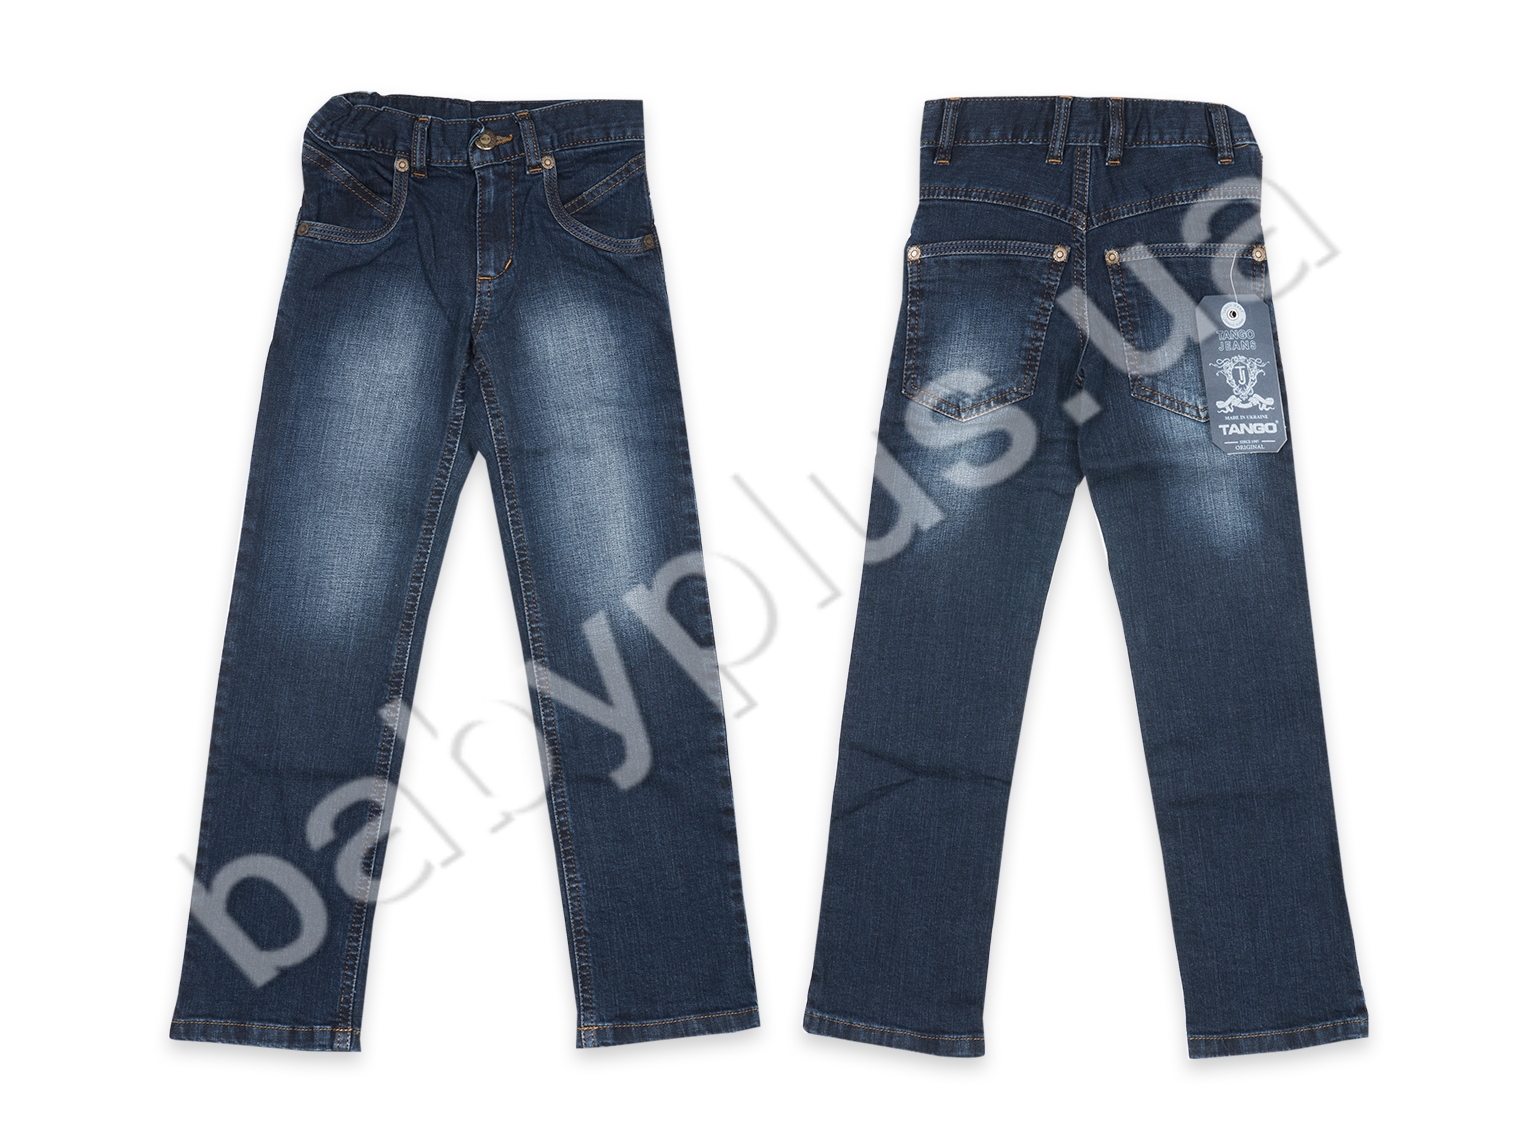 Джинсы для мальчика (рост 122, возраст 7 лет). ТМ Tango Jeans